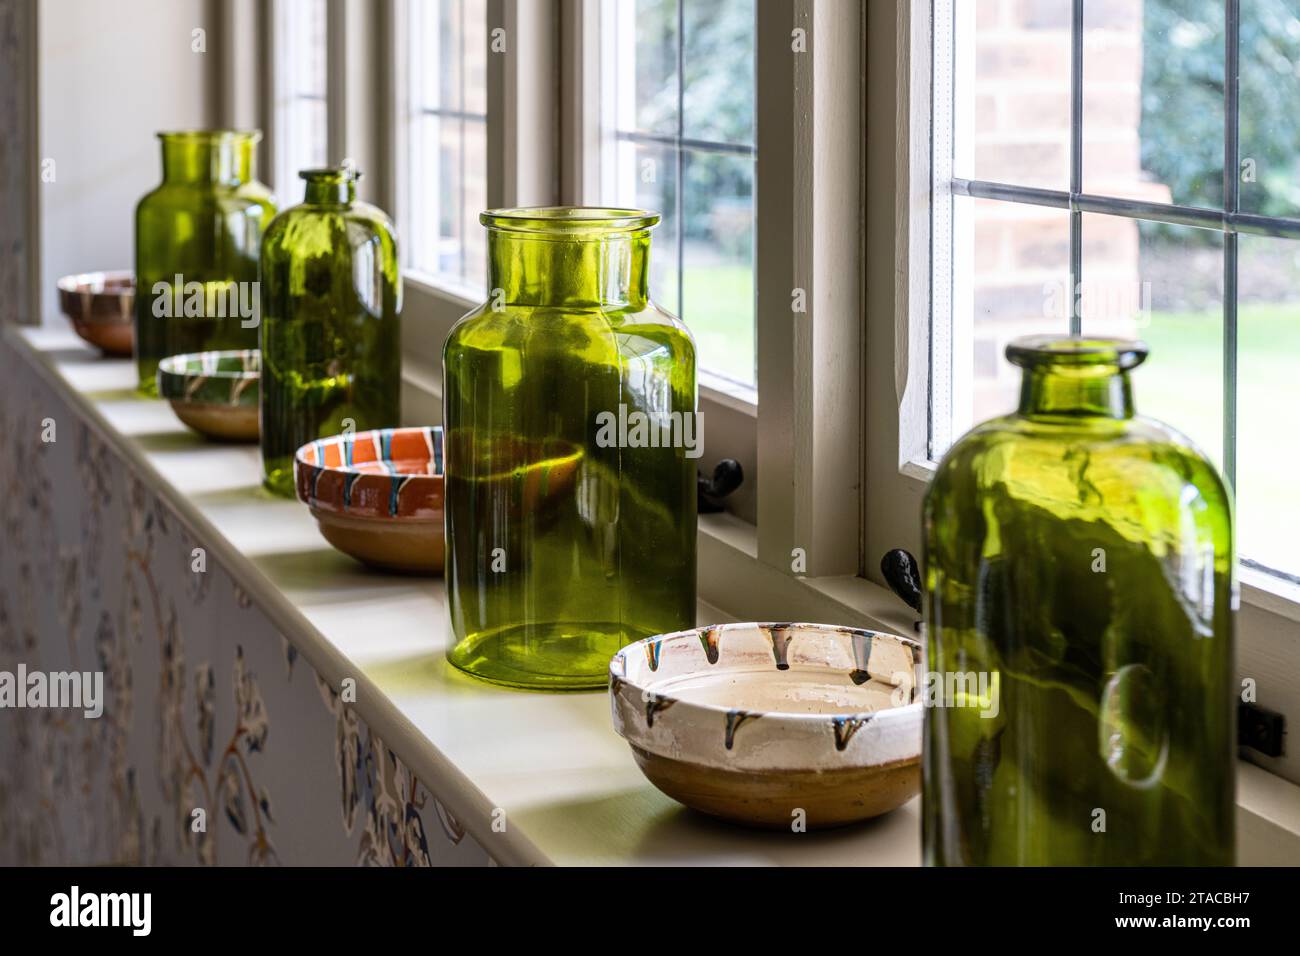 Grandi bottiglie verdi e ciotole in ceramica sul davanzale in stile Arts and Crafts degli anni '1930. Hove, East Sussex, Regno Unito. Foto Stock